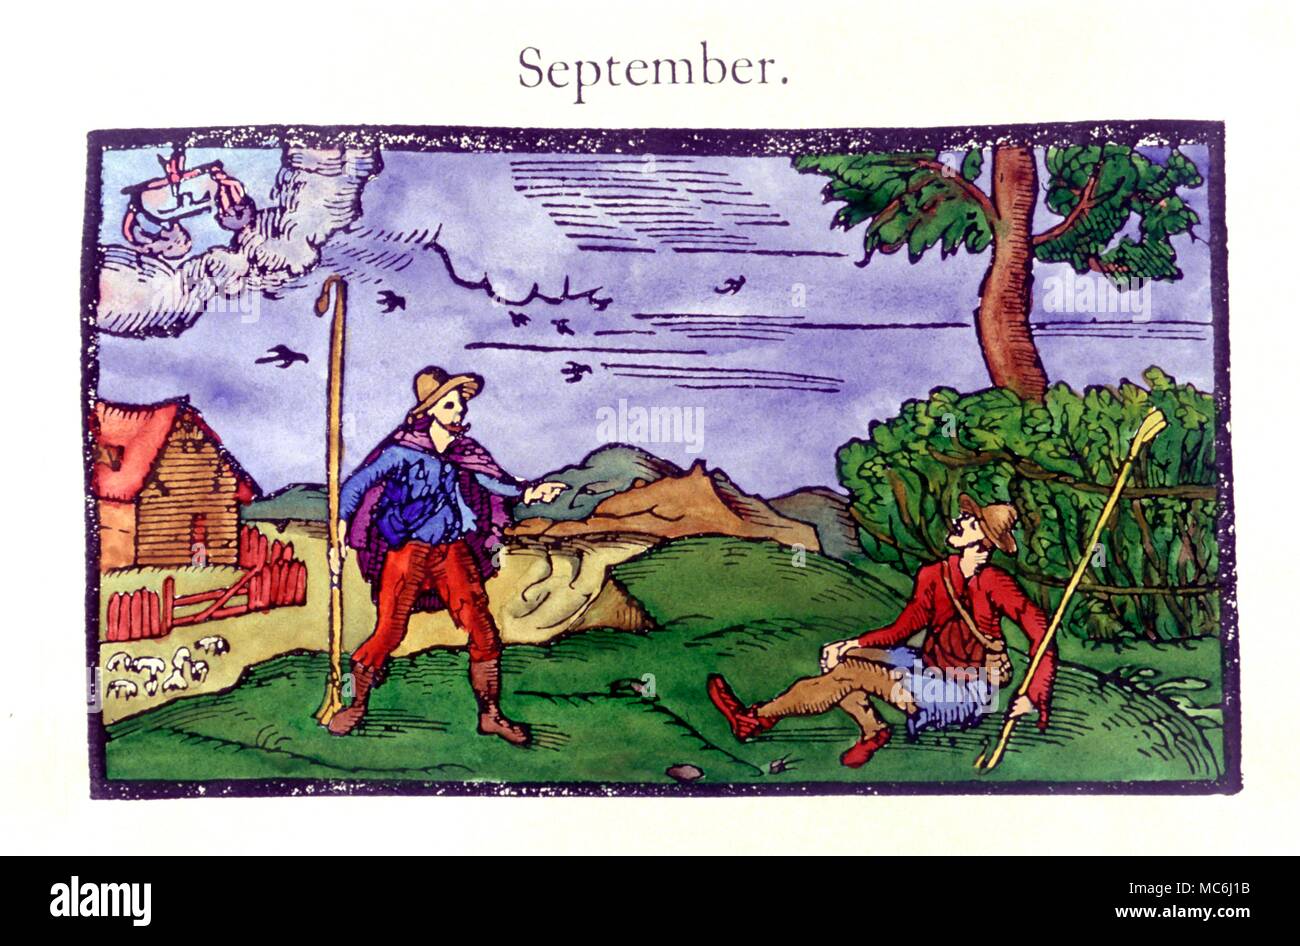 Signes du zodiaque Balance Balance Balance et le mois de septembre à partir d'une série de mois utilisé comme Eddmund en vignettes Spenser's Le Fairie Queene dérivé de son calendrier de 1579 Shepheard Banque D'Images